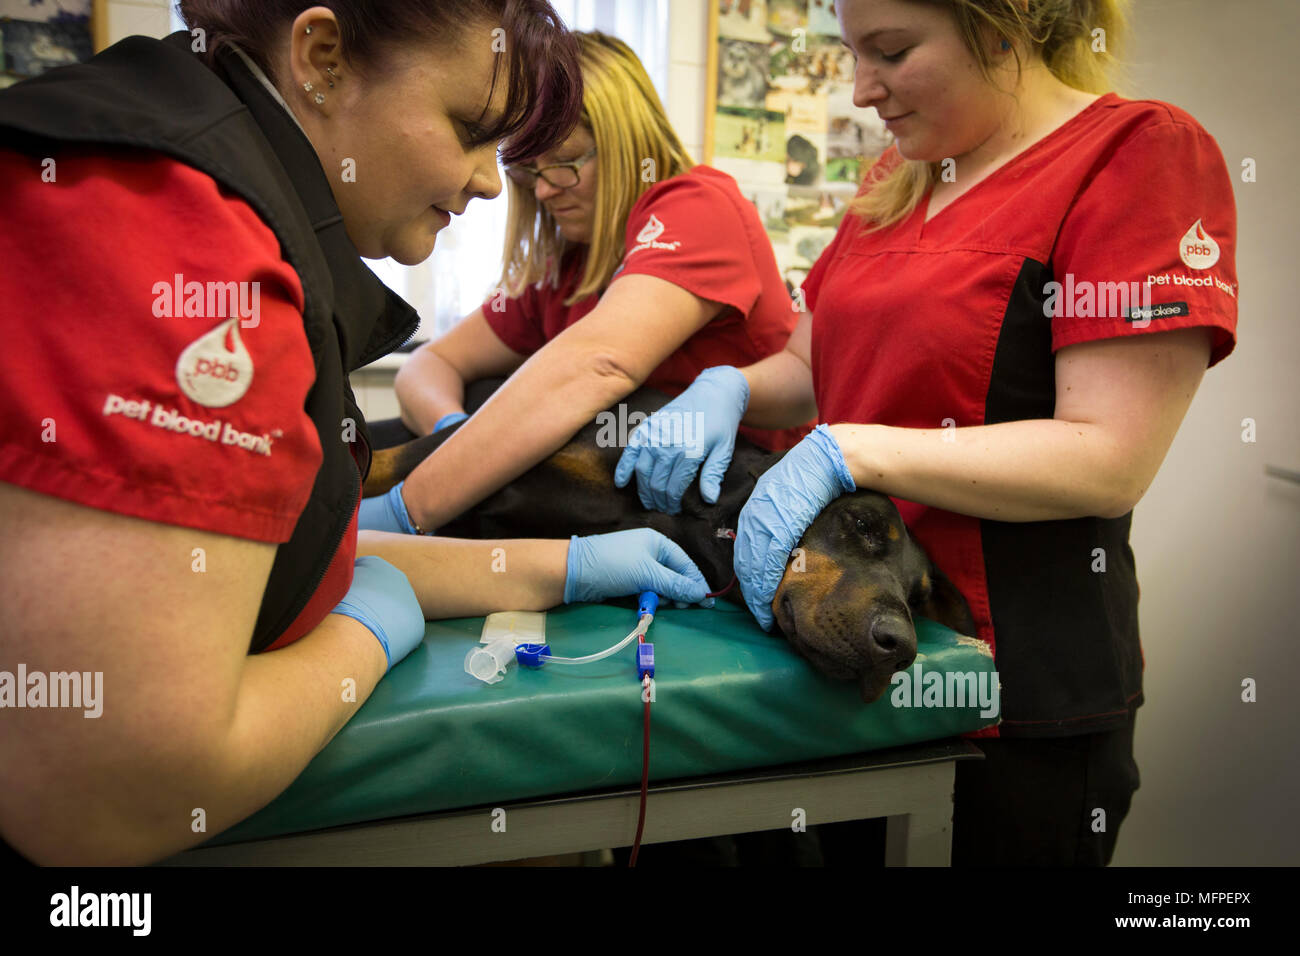 Mitarbeiter von Pet-Blutbank, Blut von Roxy der Dobermann, bei einer Blutspende Sitzung für Hunde in einer Tierklinik in Hatherton, Staffordshire statt. Stockfoto